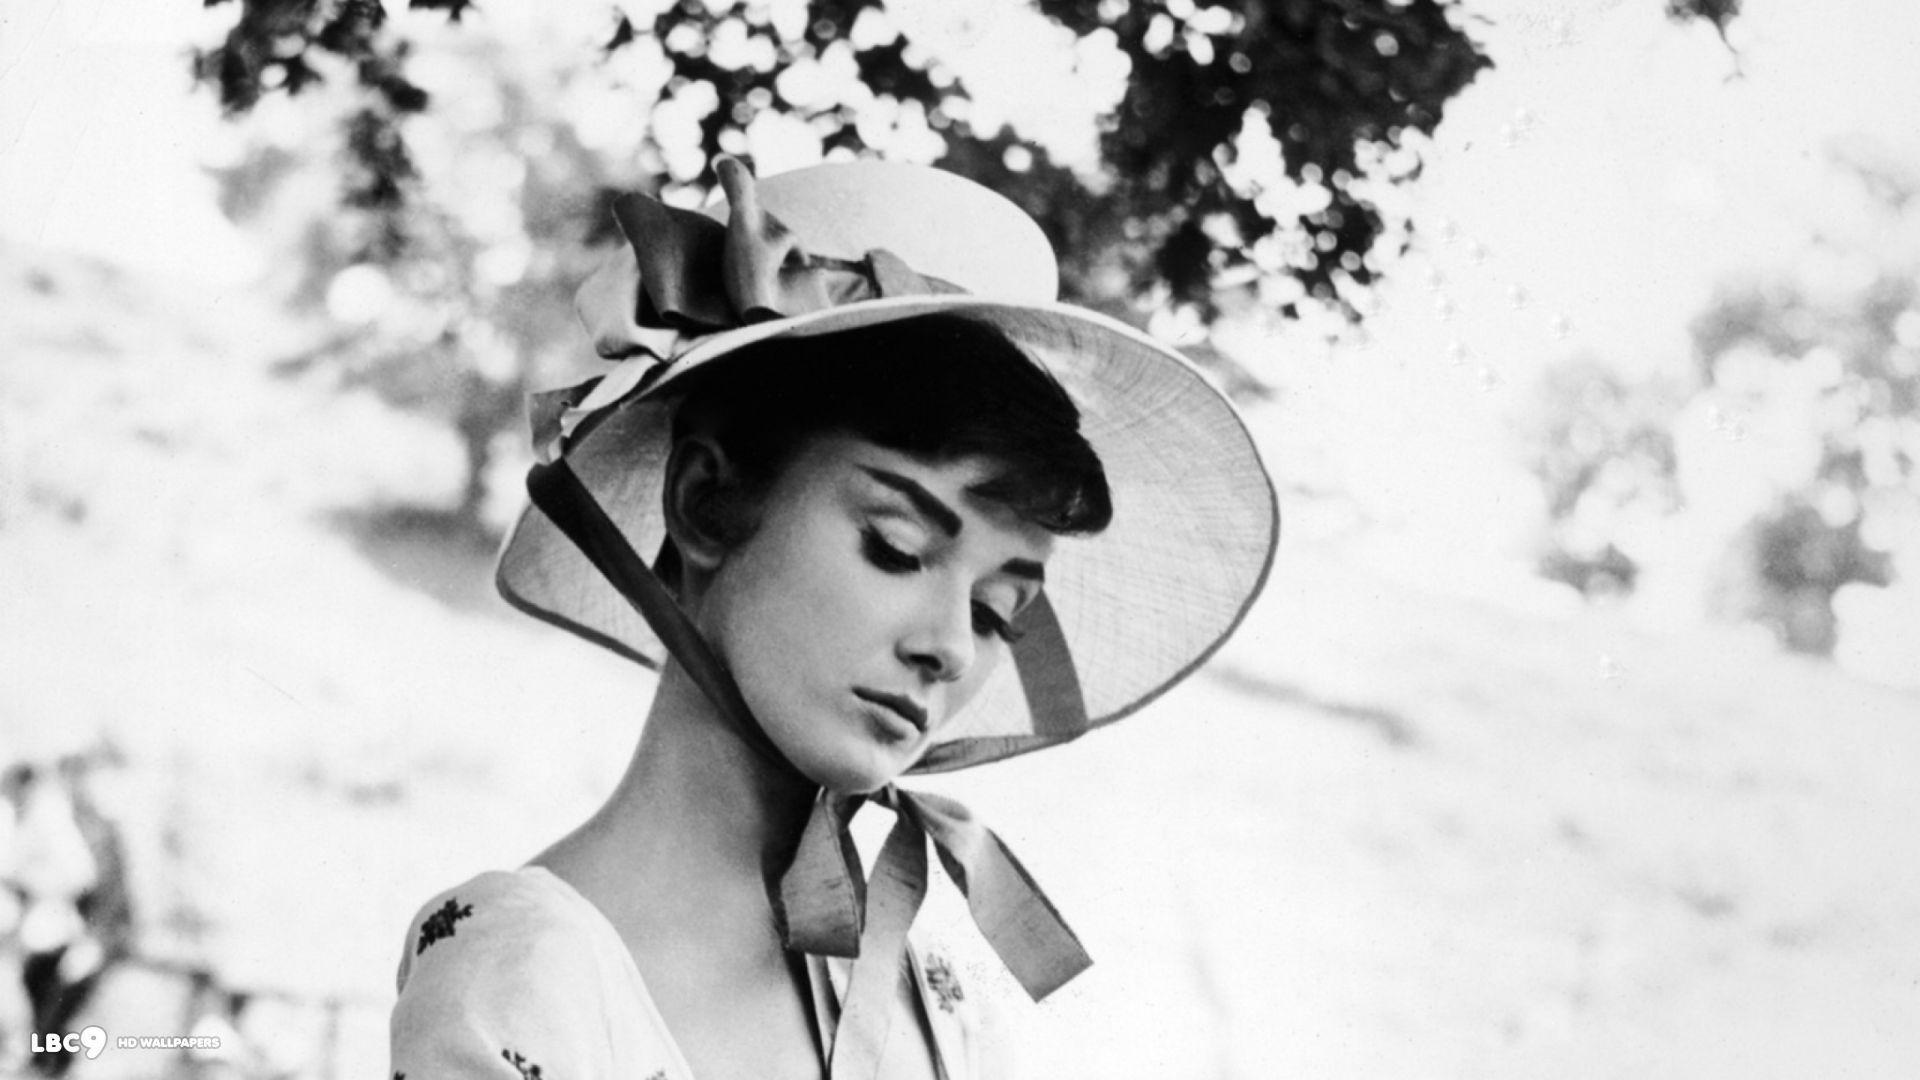 Audrey Hepburn Background